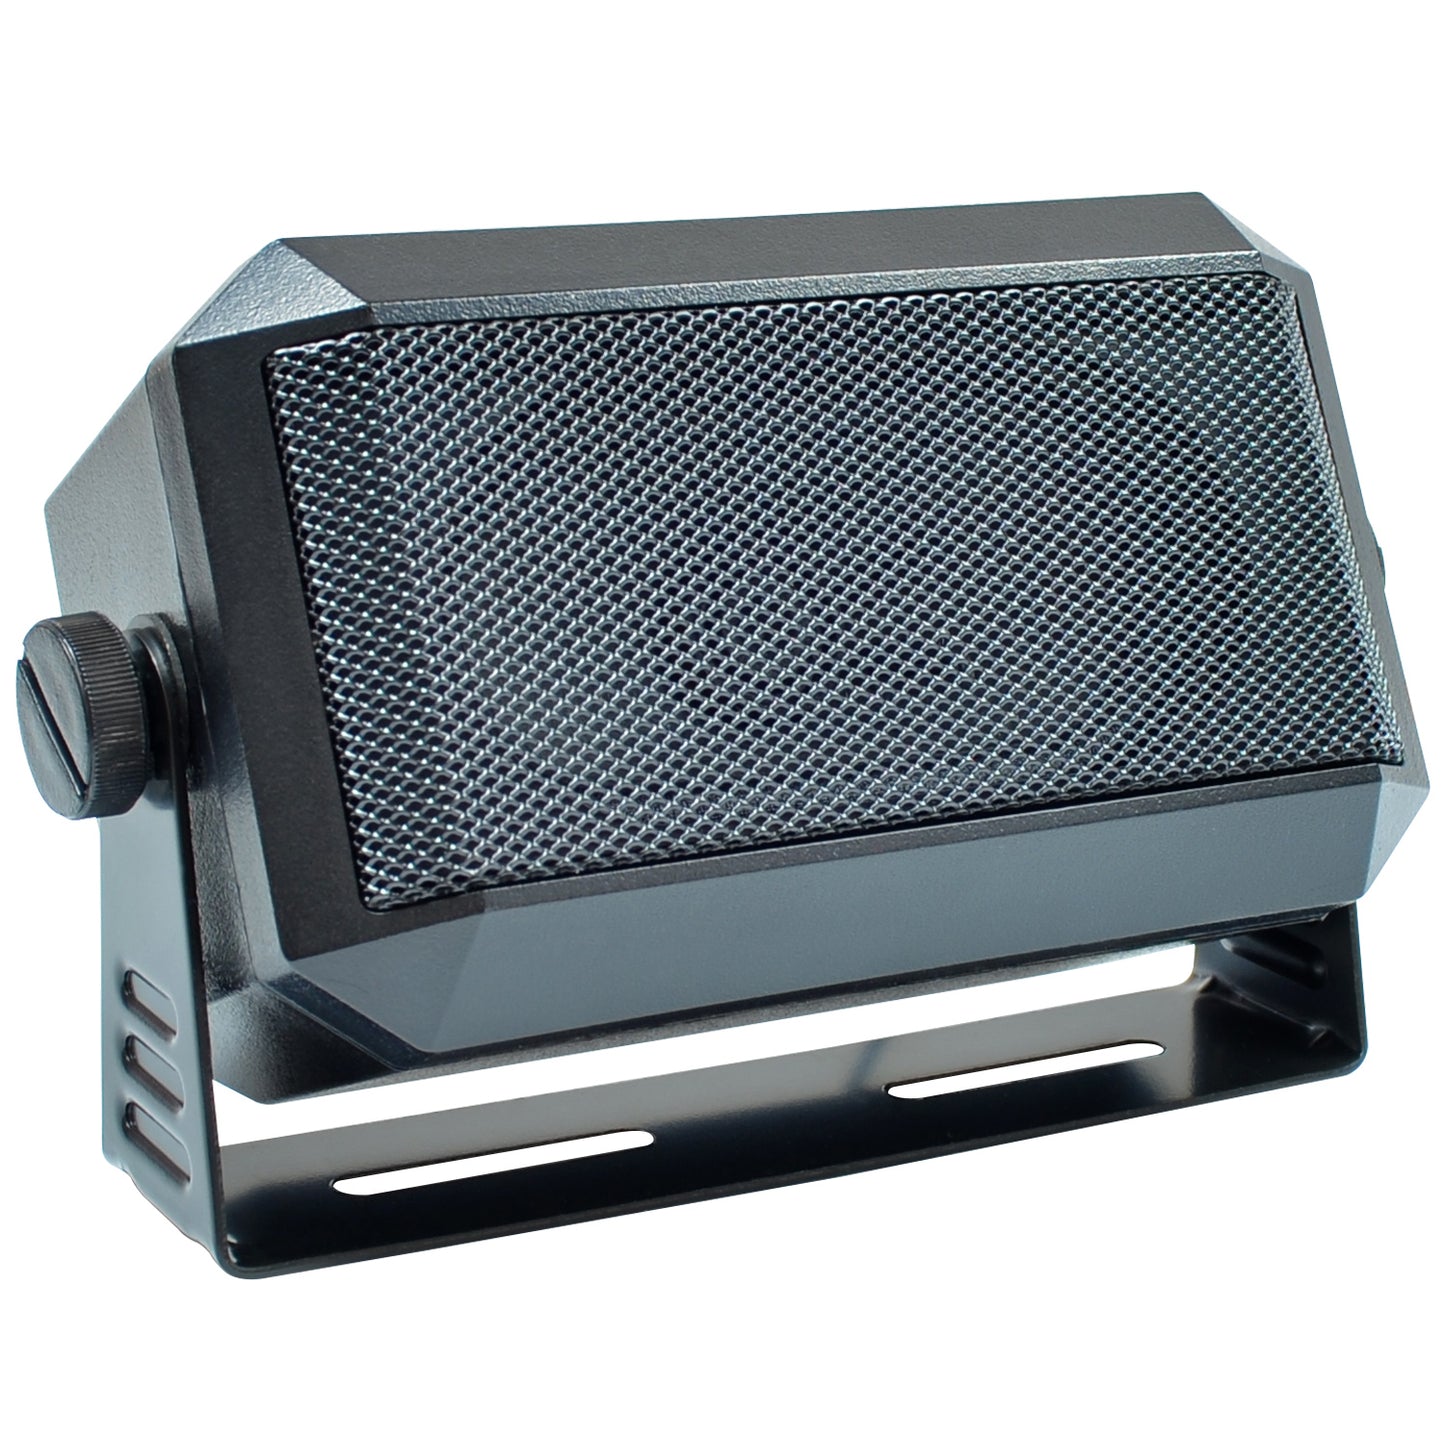 External Radio Scanner Speaker - 3.5" - Whistler Group